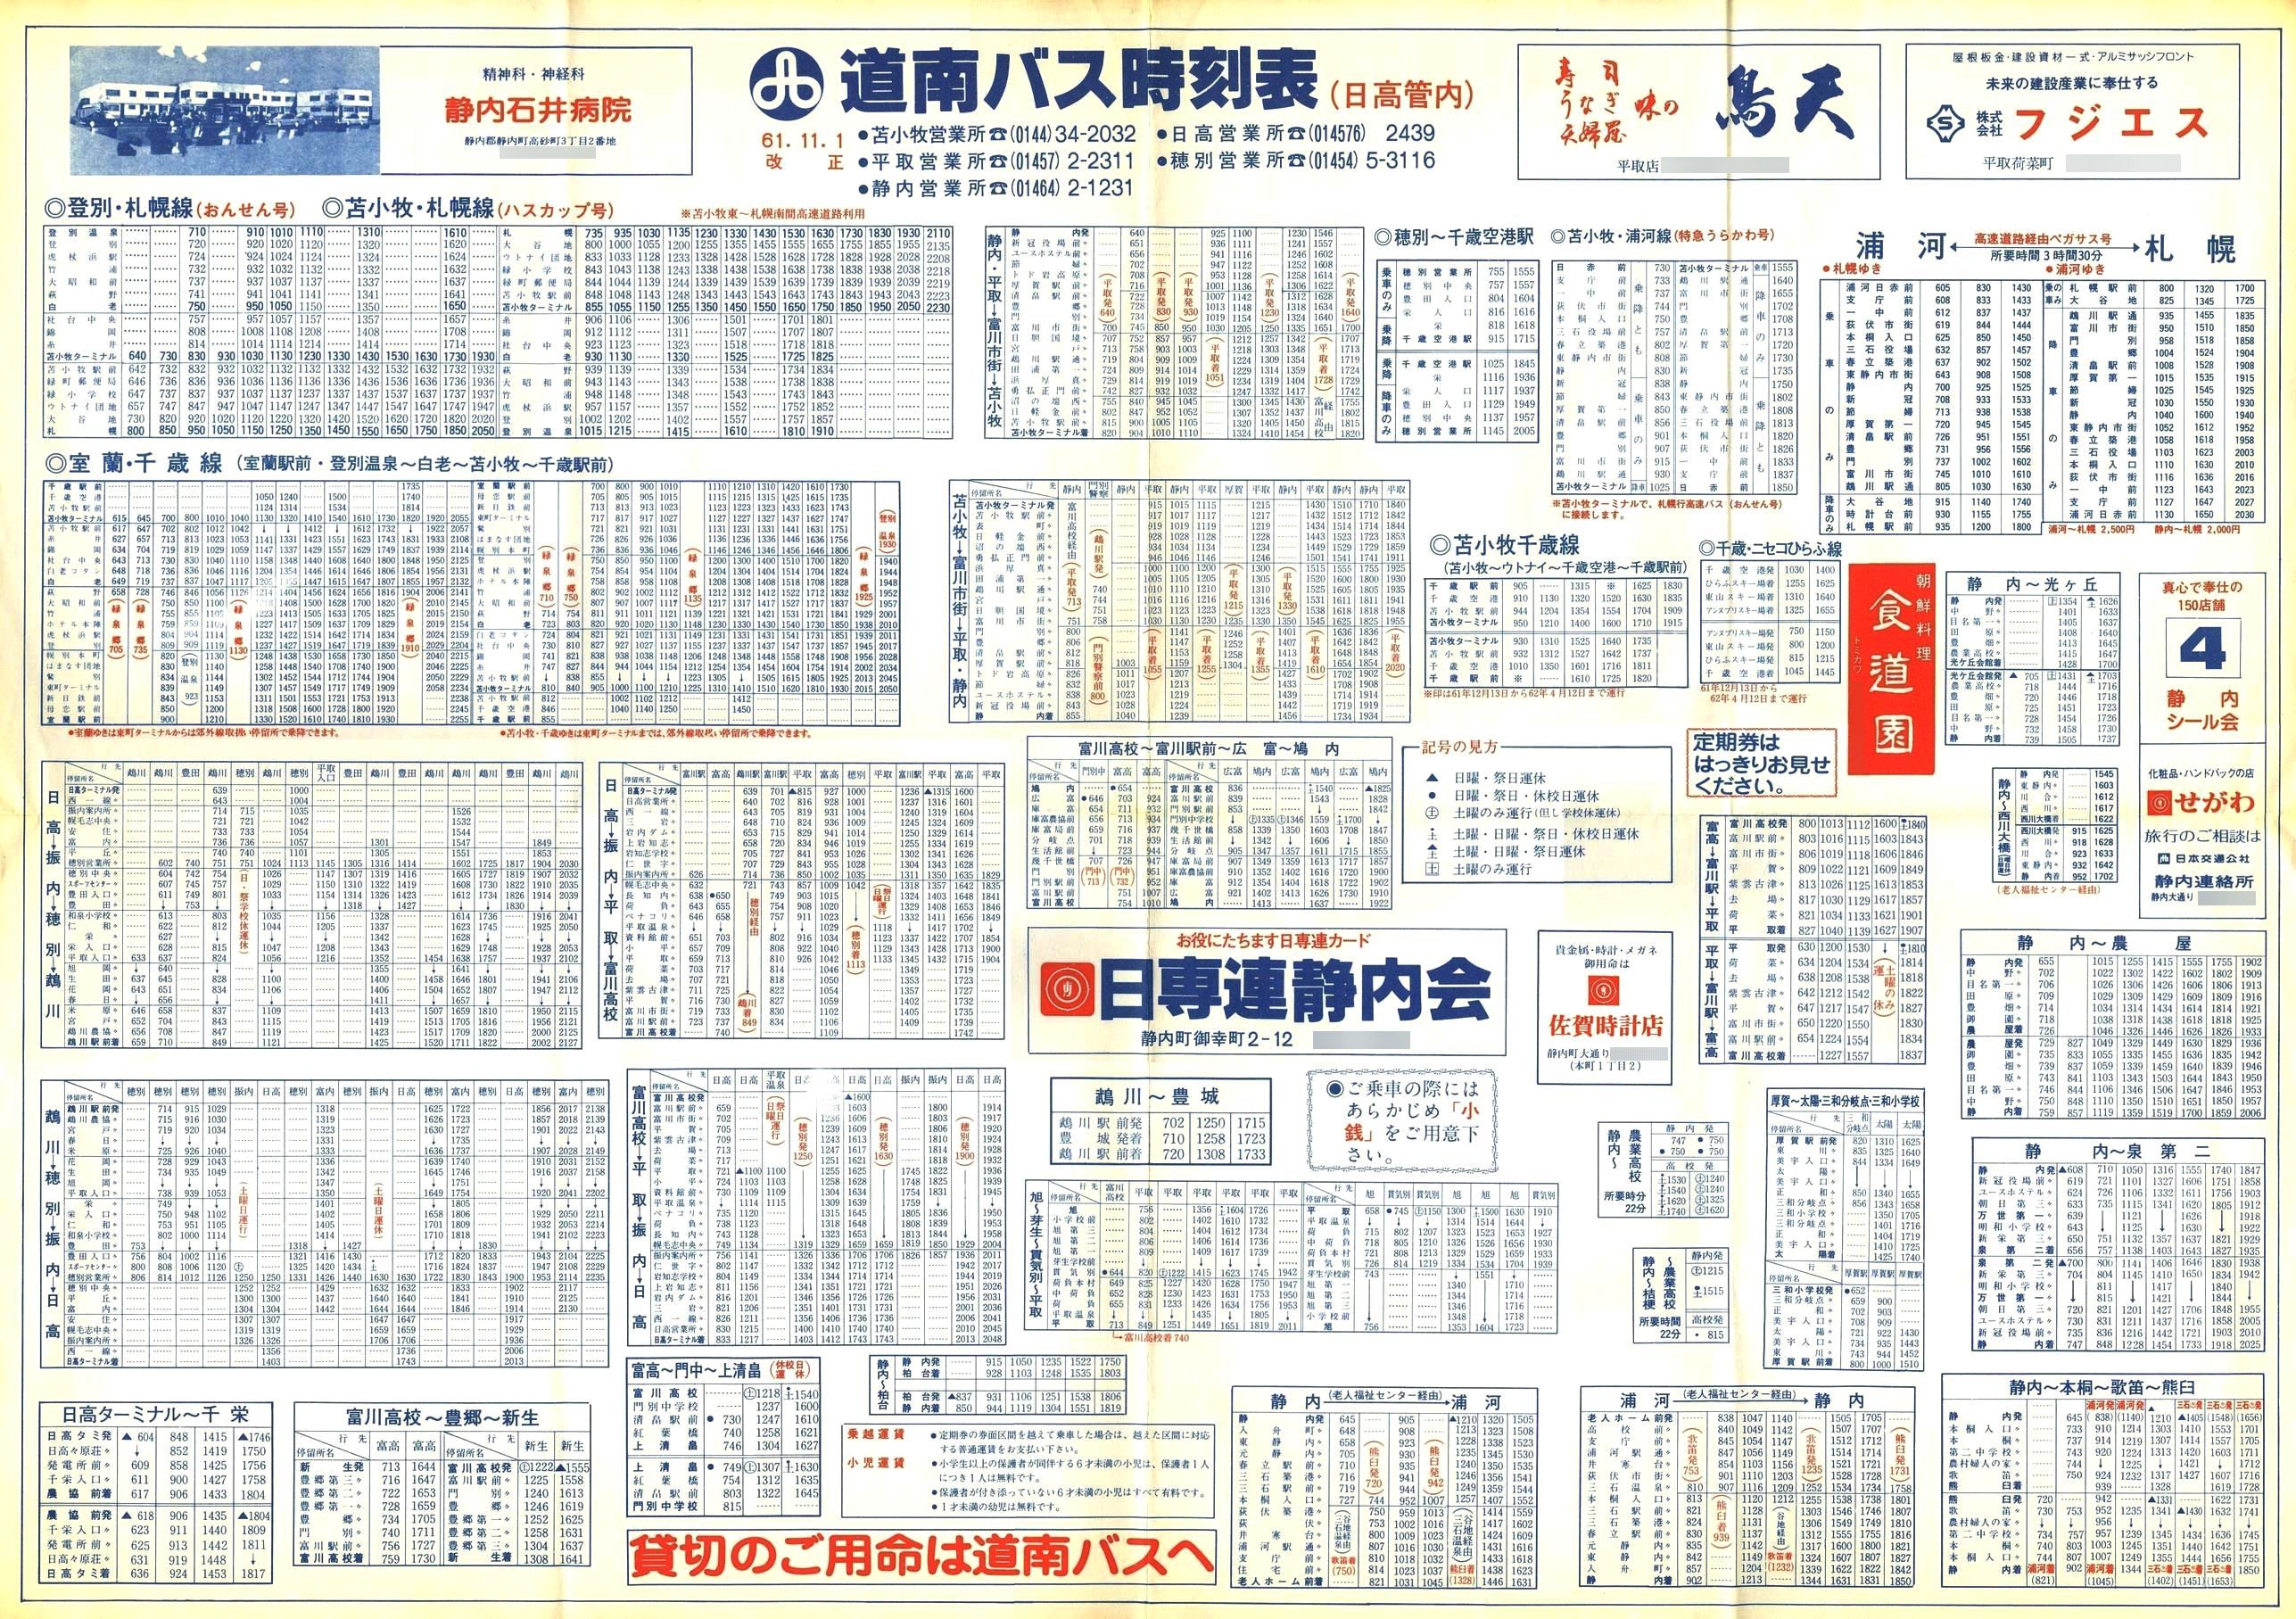 1986-11-01改正_道南バス_日高管内大判時刻表